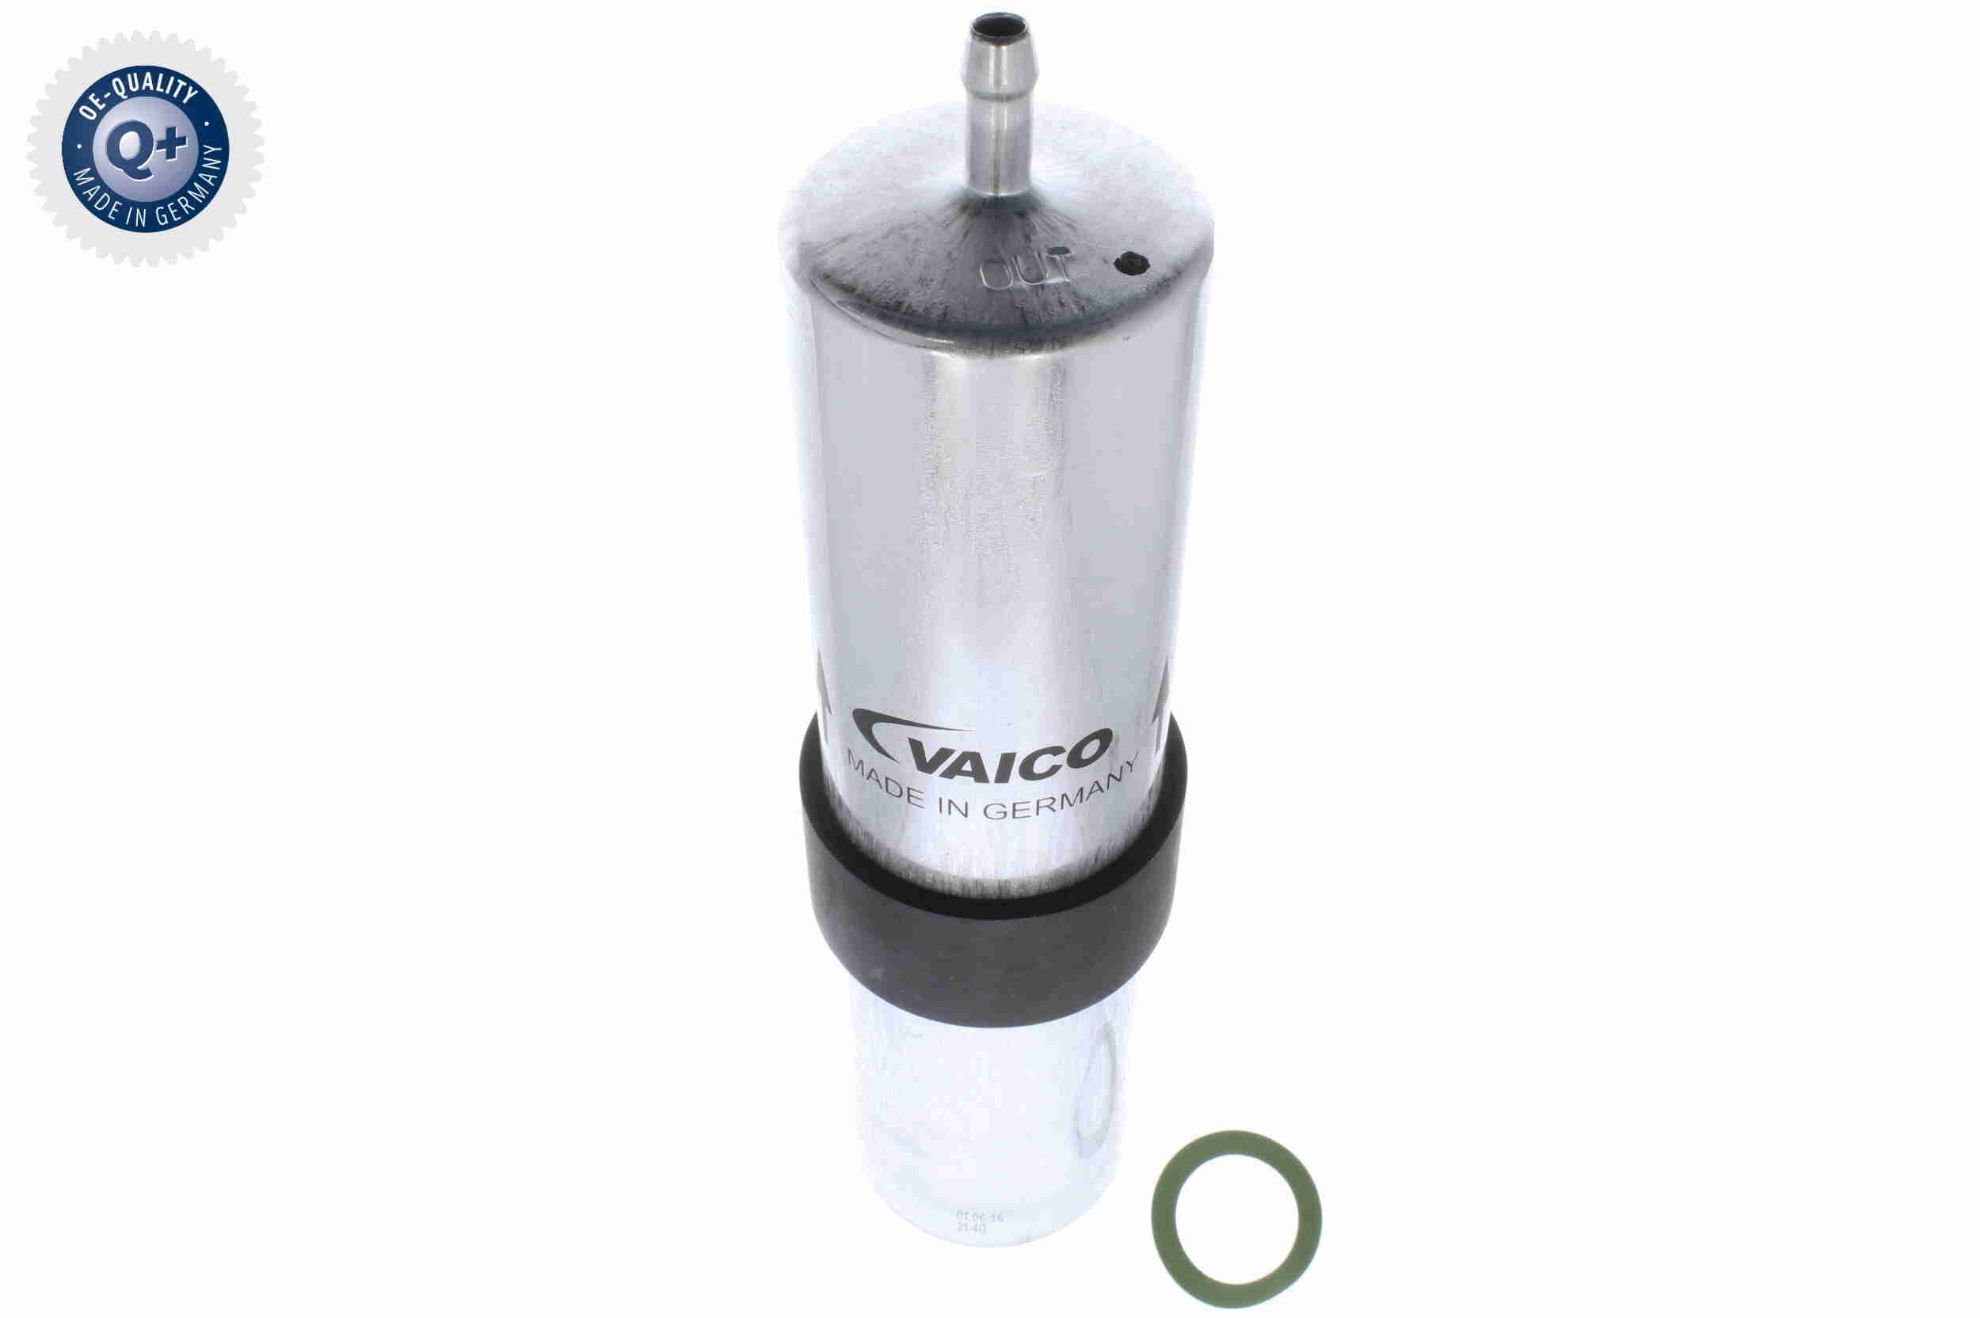 Obrázok Palivový filter VAICO Q+, original equipment manufacturer quality MADE IN GERMANY V201380